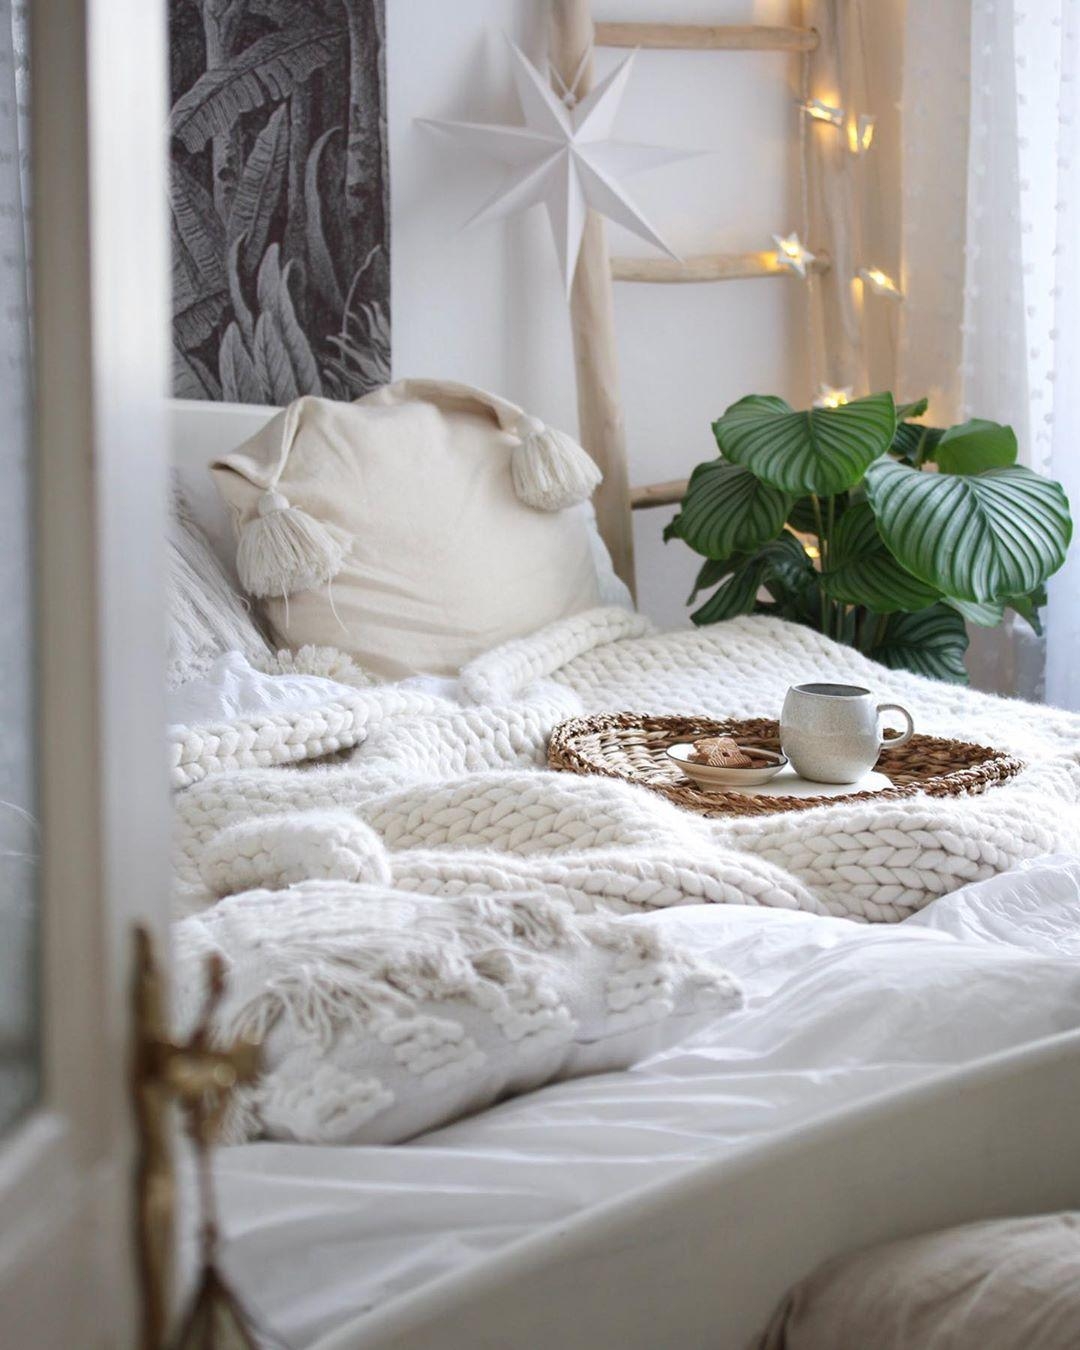 Wie gerne wäre ich heute länger im #Bett geblieben...🌙

#schlafzimmer #bedroom #cozyhome #scandistyle #boho #couchliebt